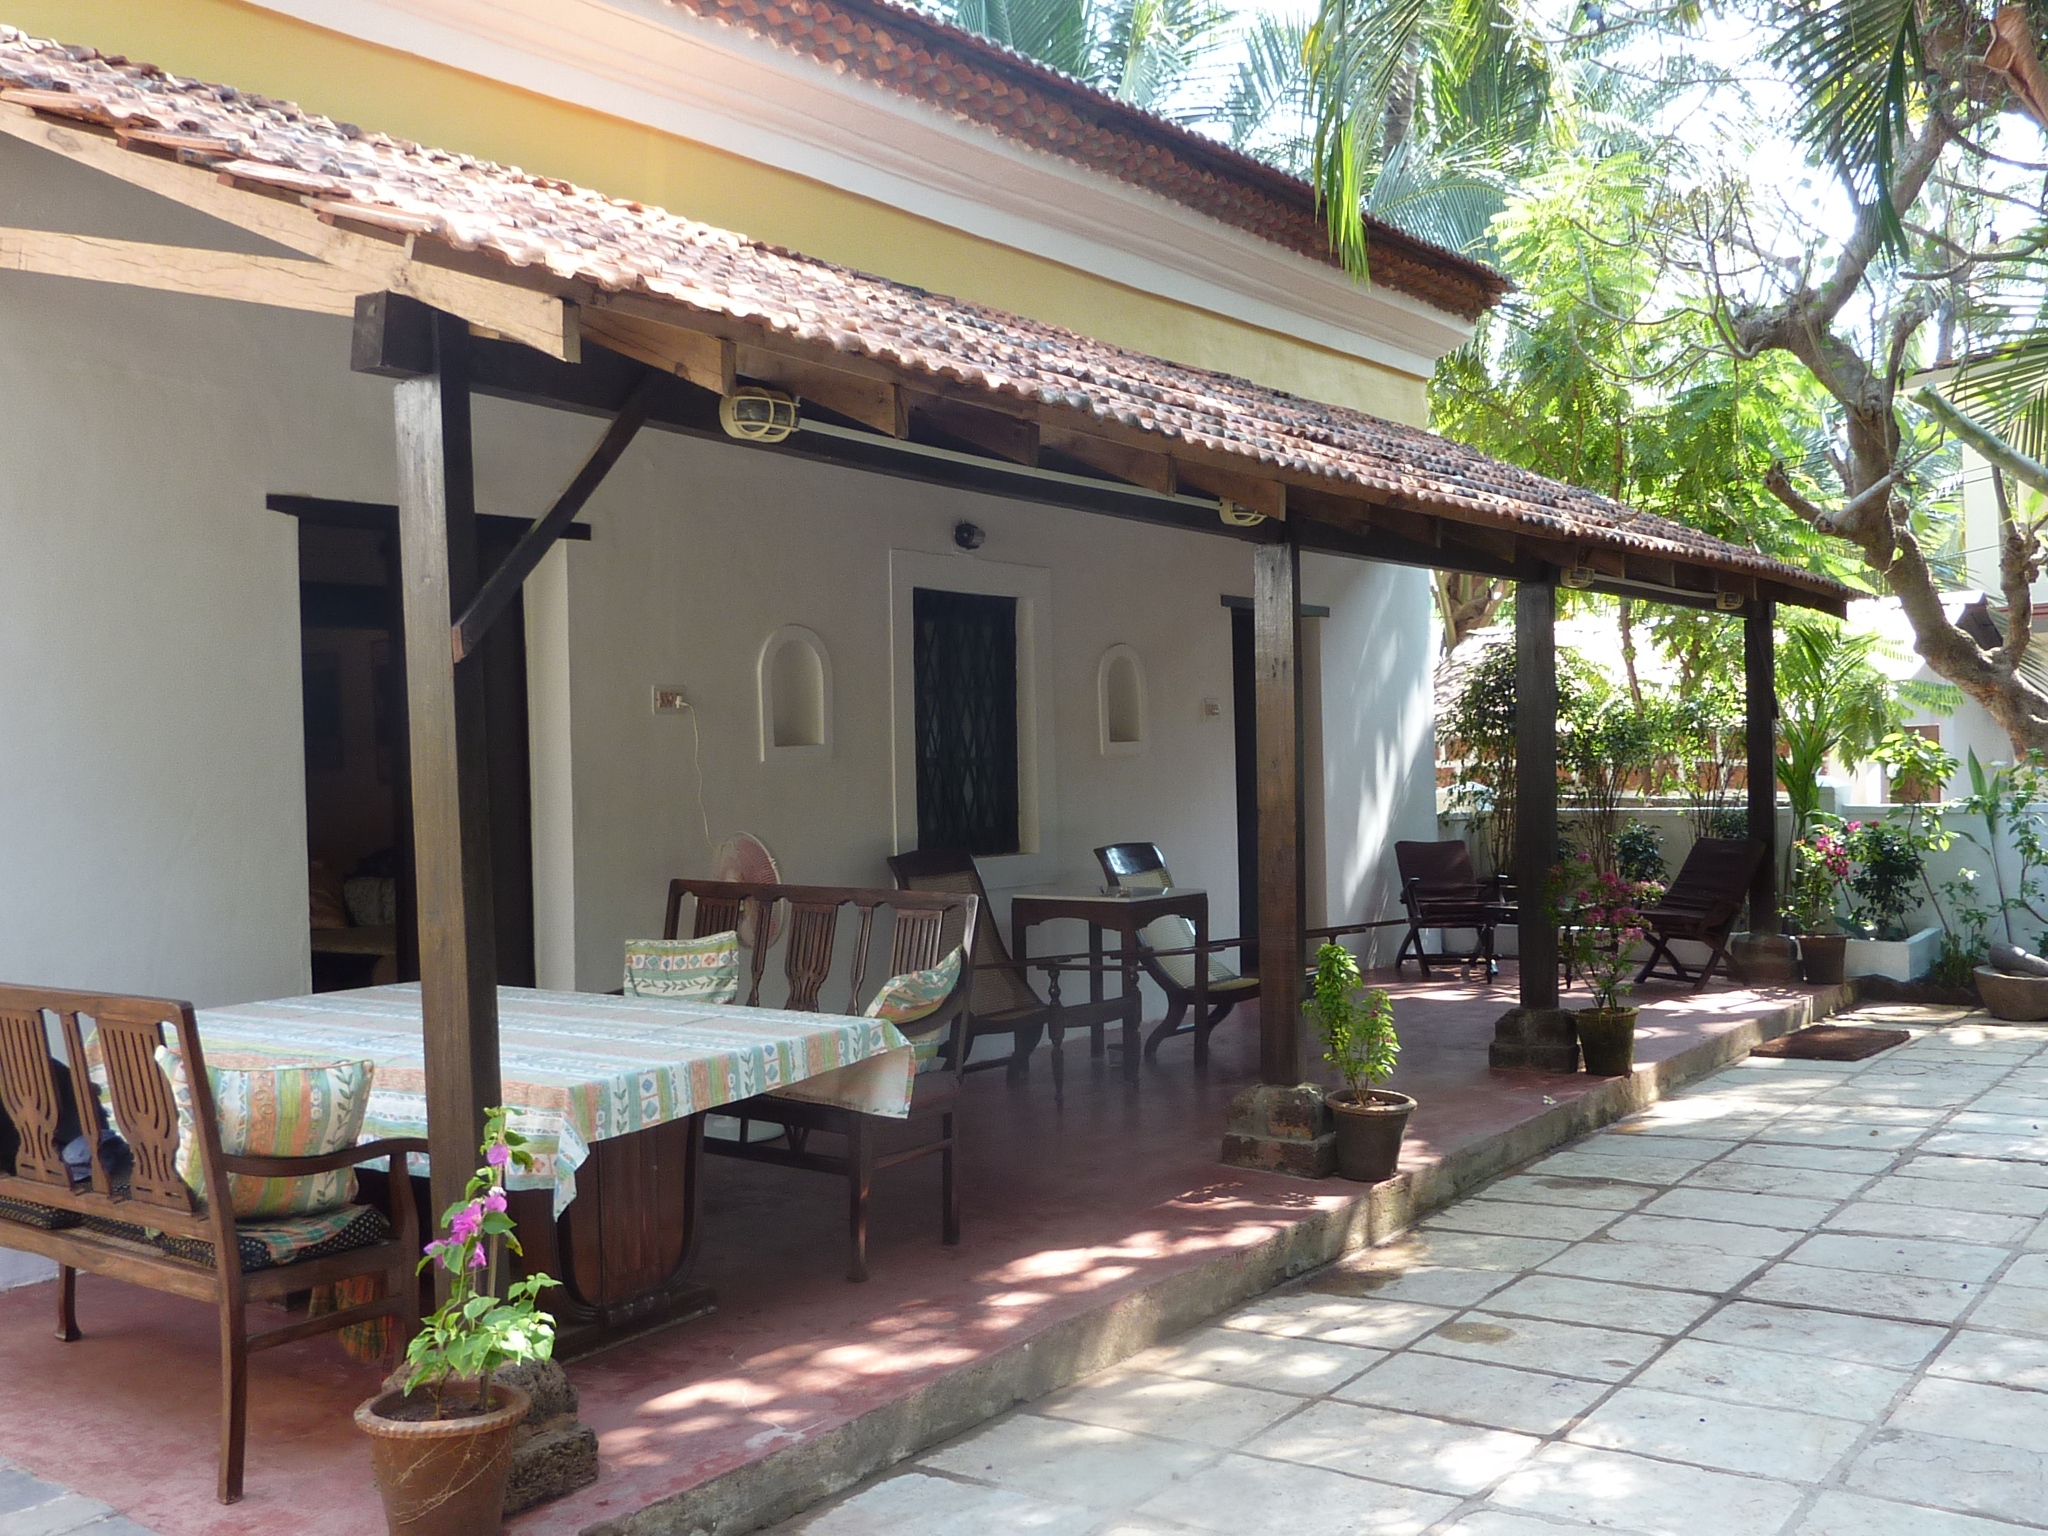 Casa Lenas - private garden with veranda